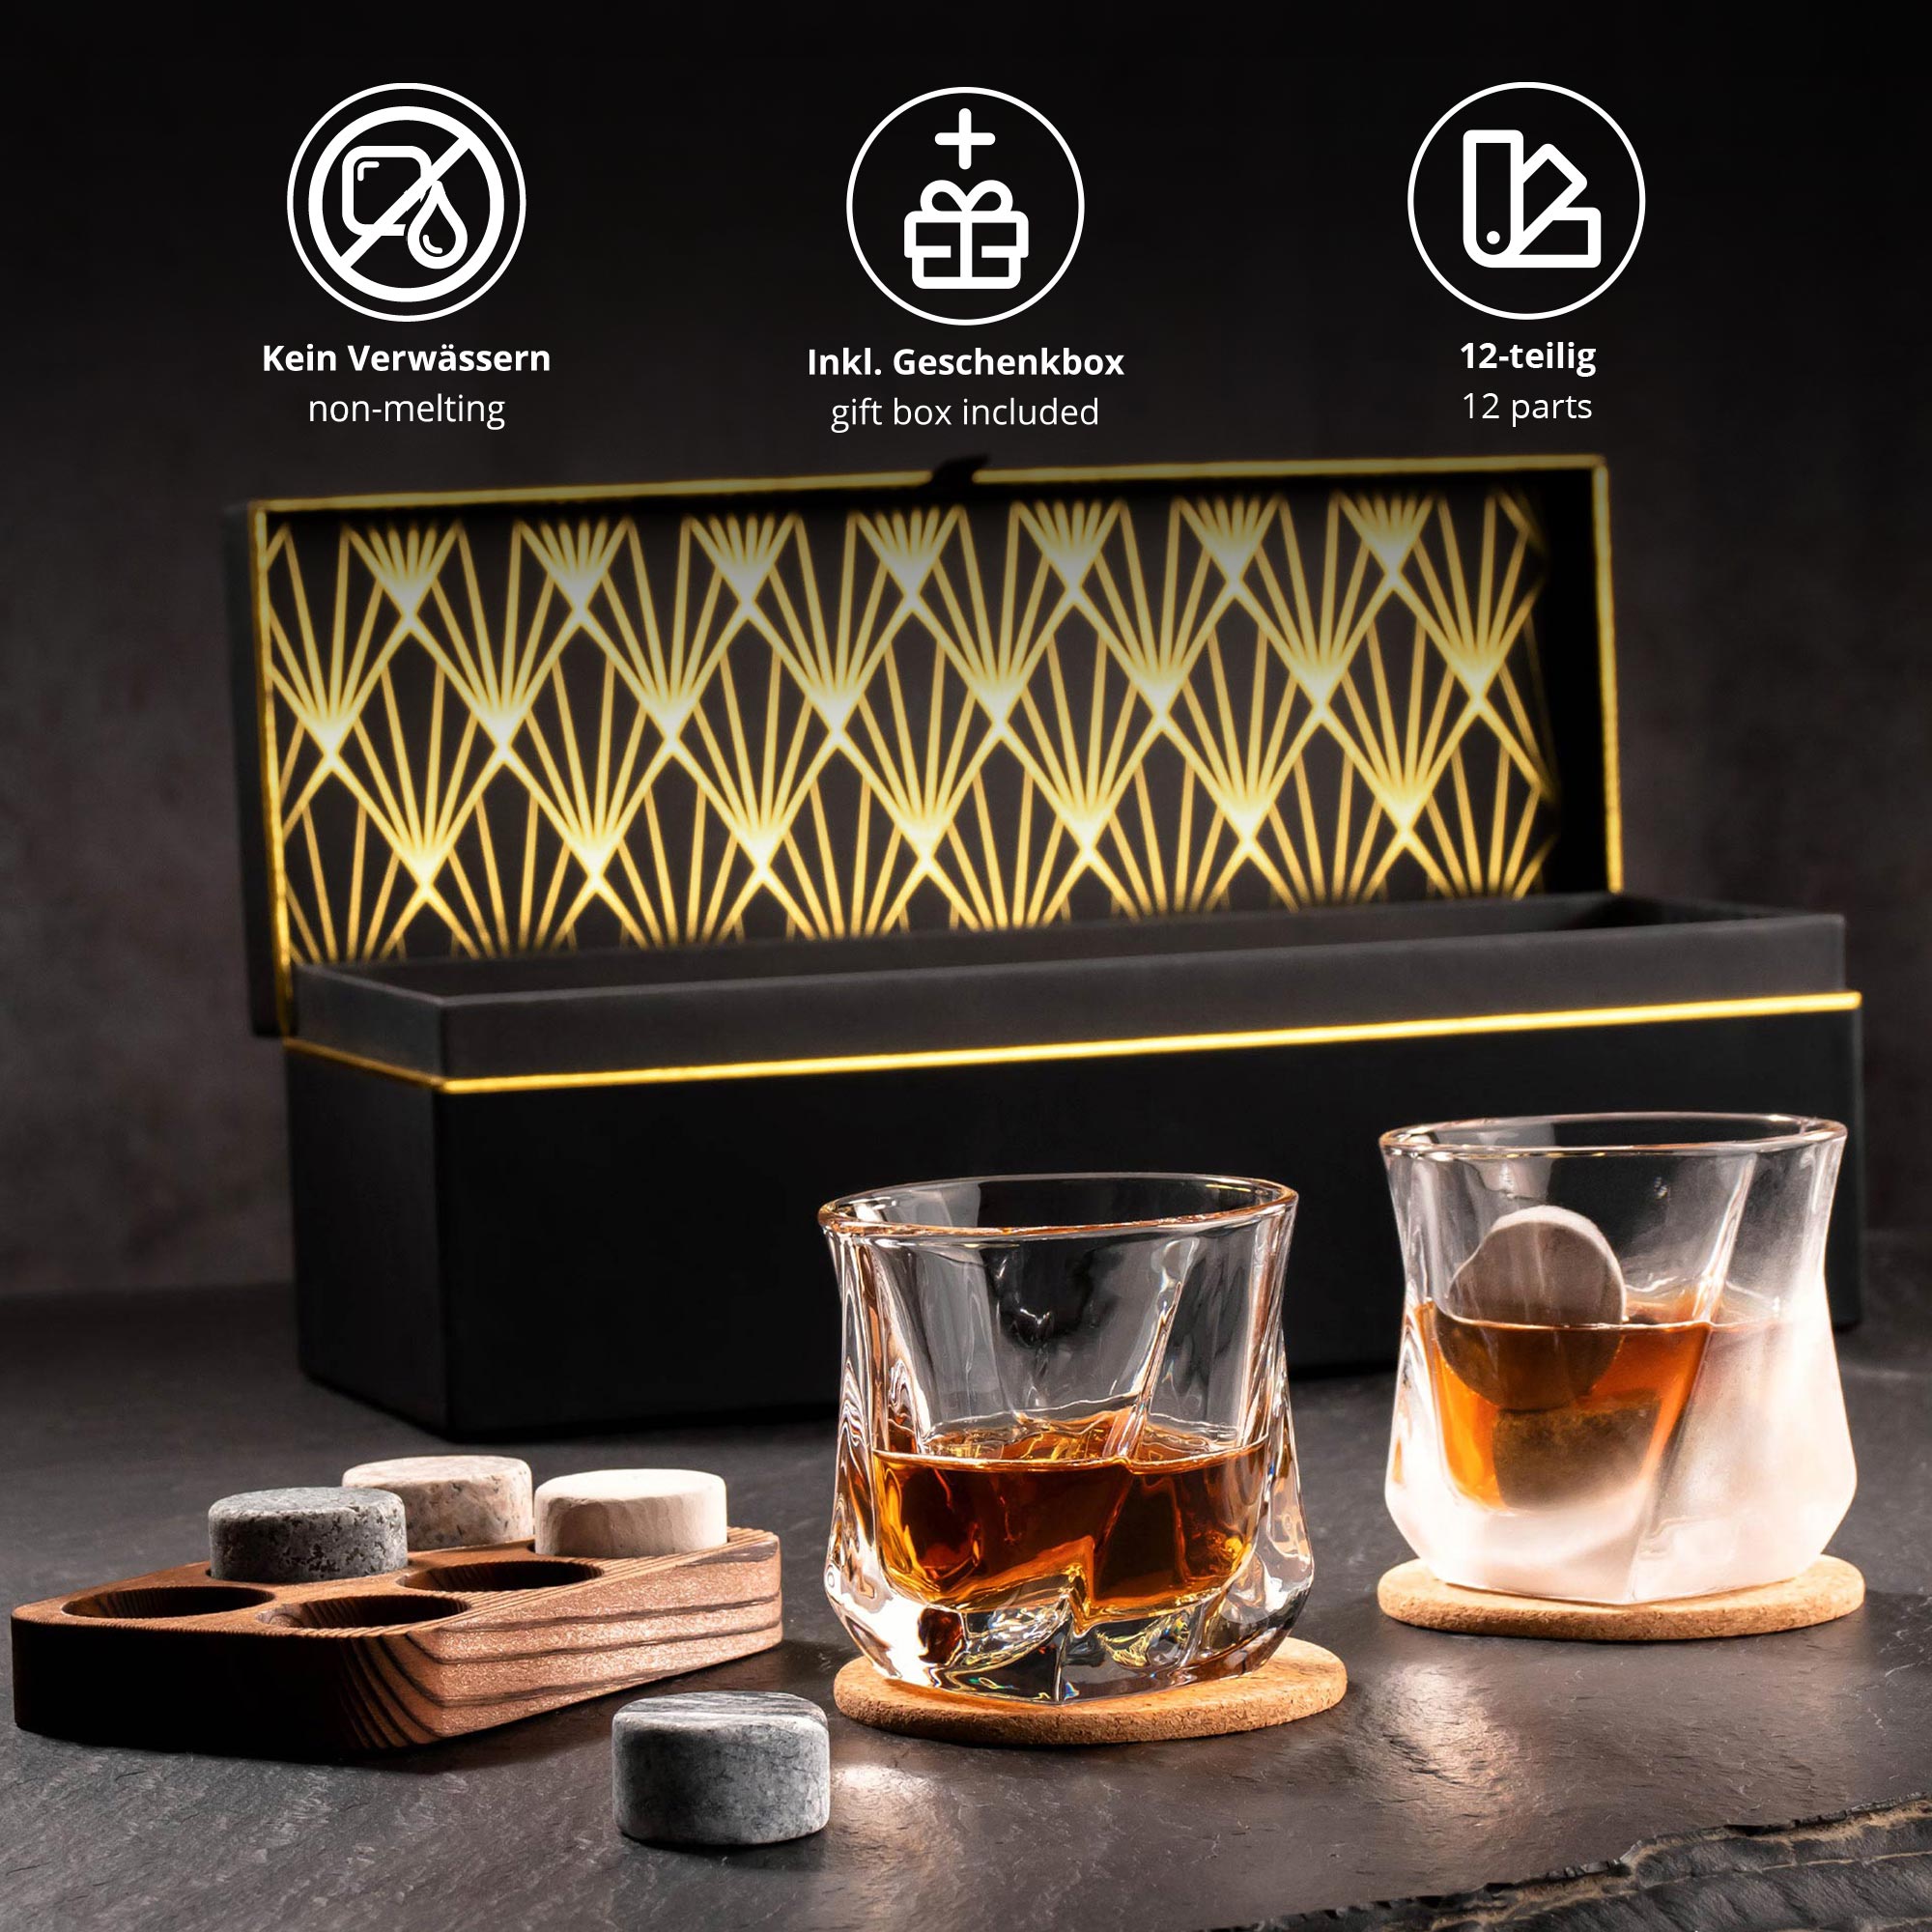 Whisky Geschenkset Deluxe personalisiert zum 40. Geburtstag 4